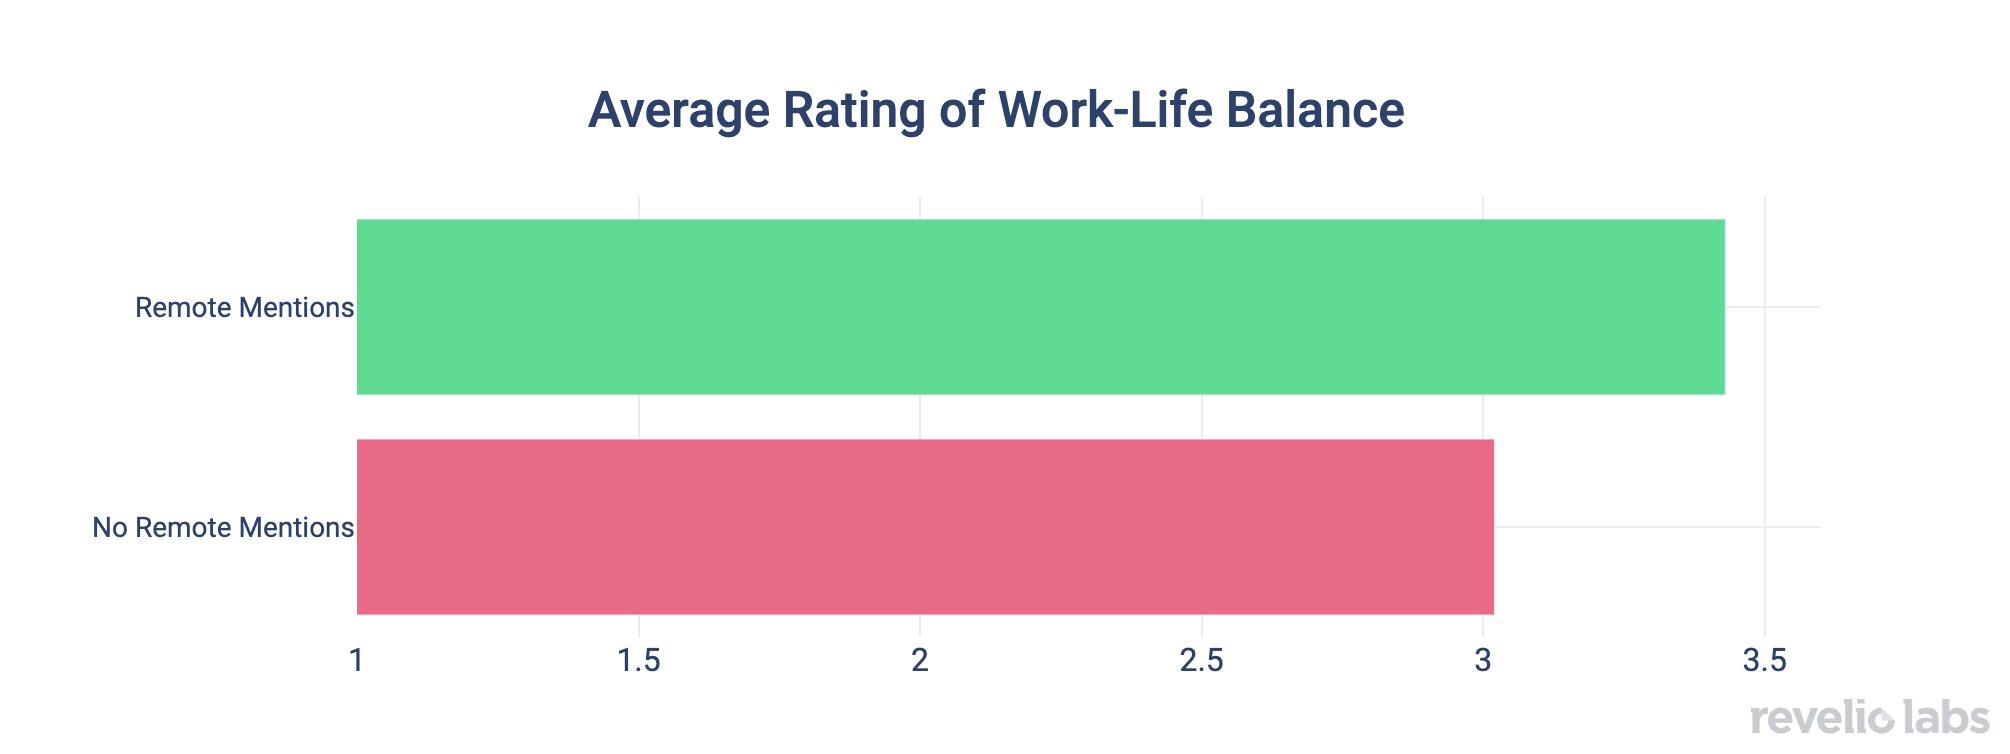 average-rating-of-work-life-balance